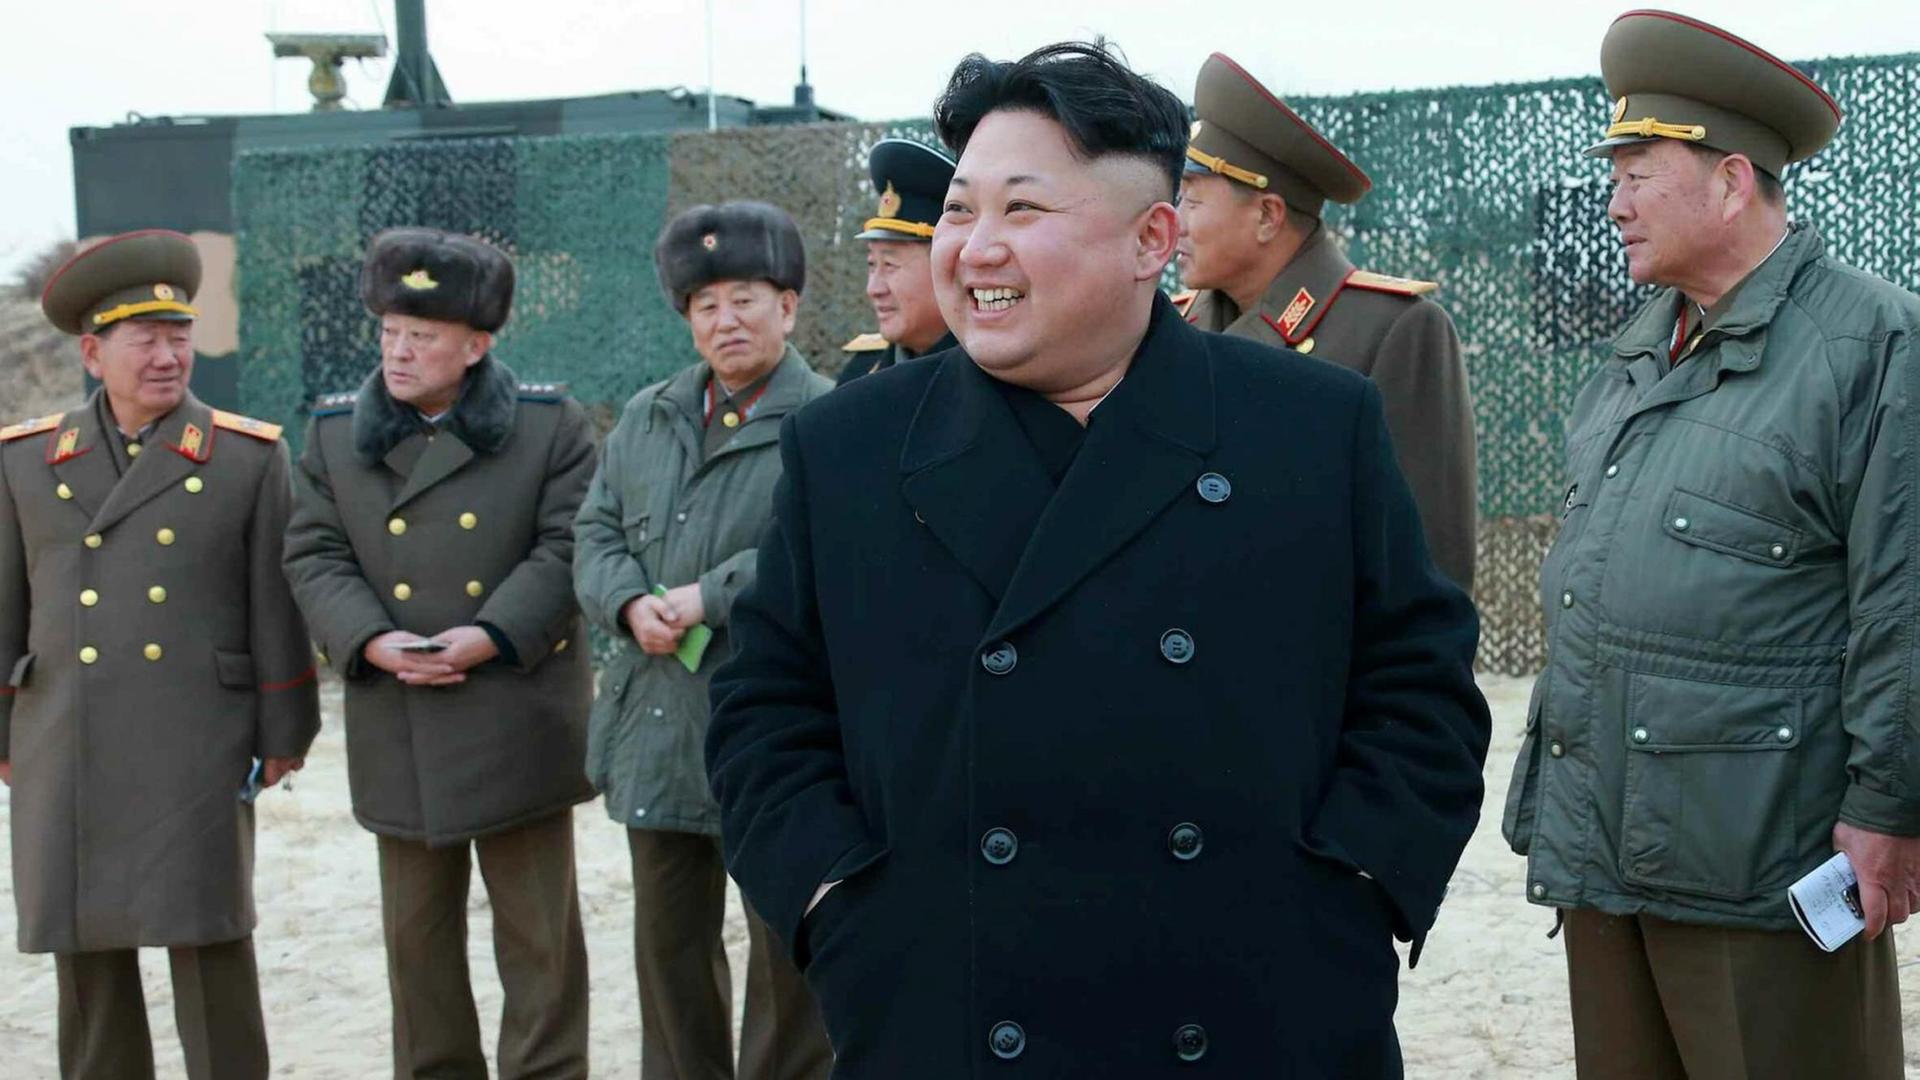 Kim Jong-un lachend im Kreis von uniformierten Männern.